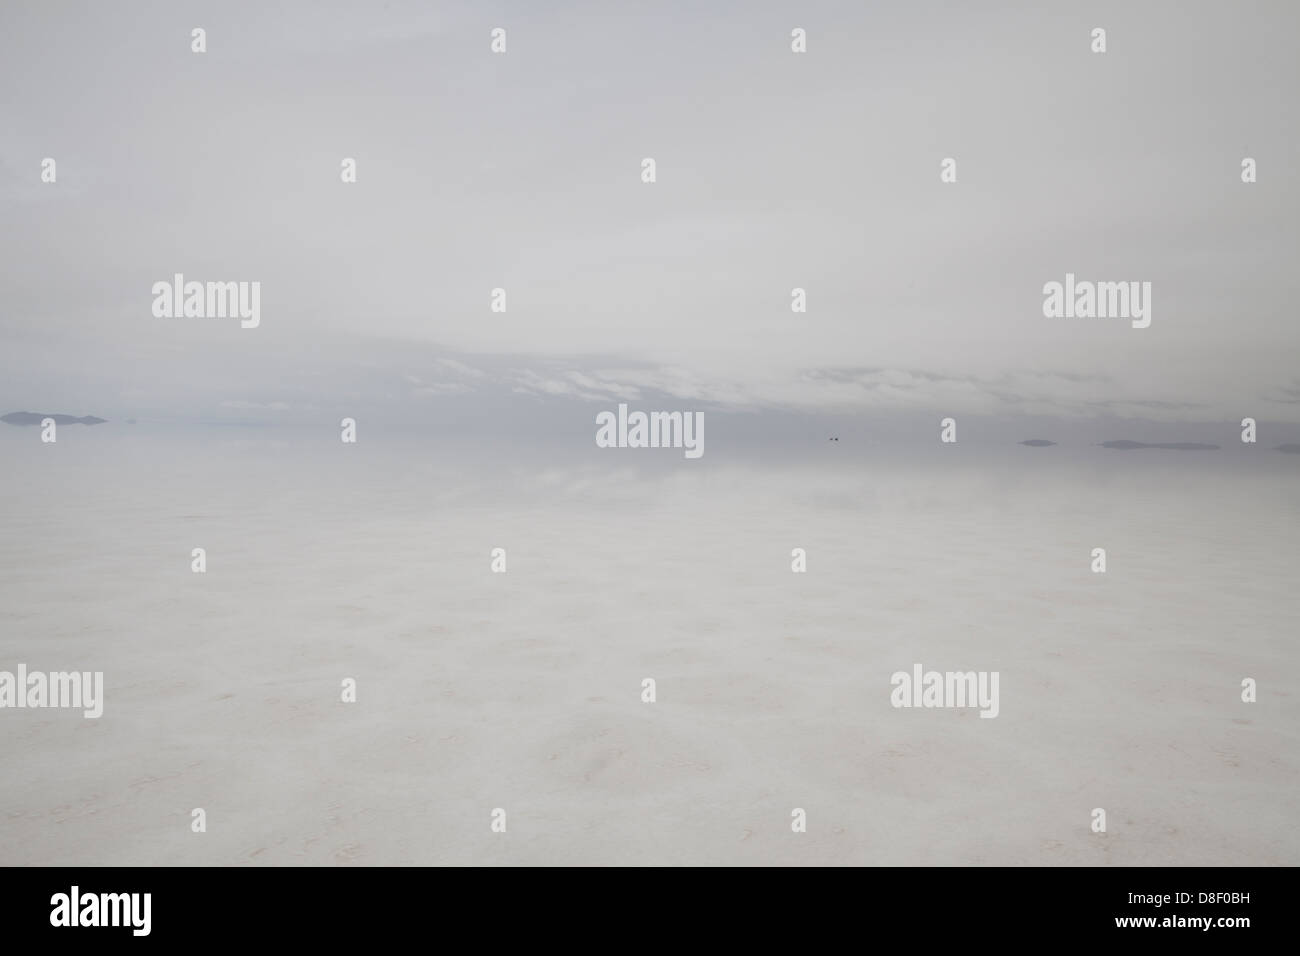 Die offenen weiten Raum des Salar de Uyuni nach Regenfällen Erstellen eines desorientierenden reflektierende Oberfläche Stockfoto